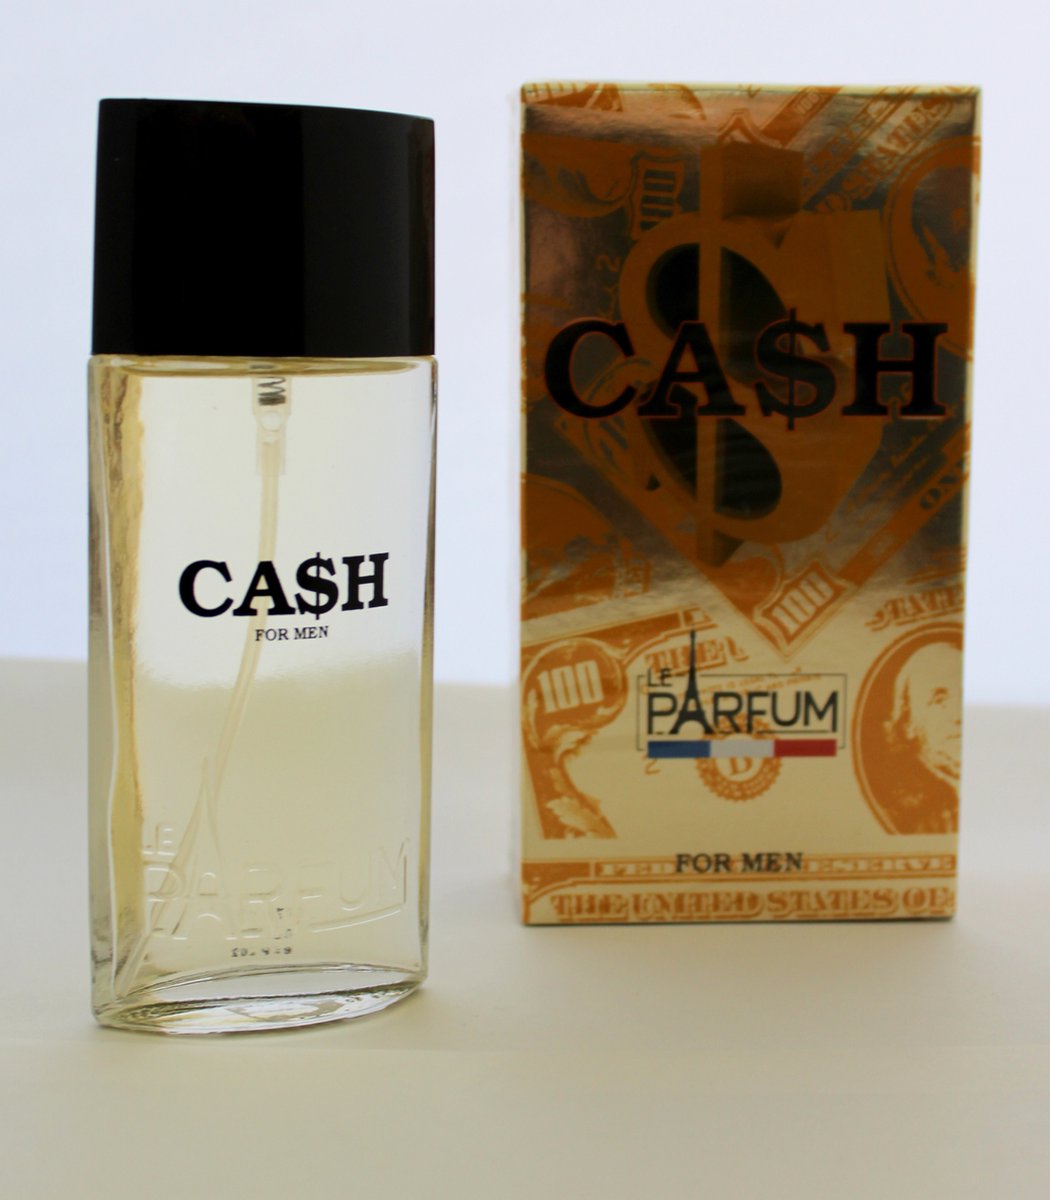 Cash for Men een heerlijk kruidige/frisse geur met Leder, Pepermunt.